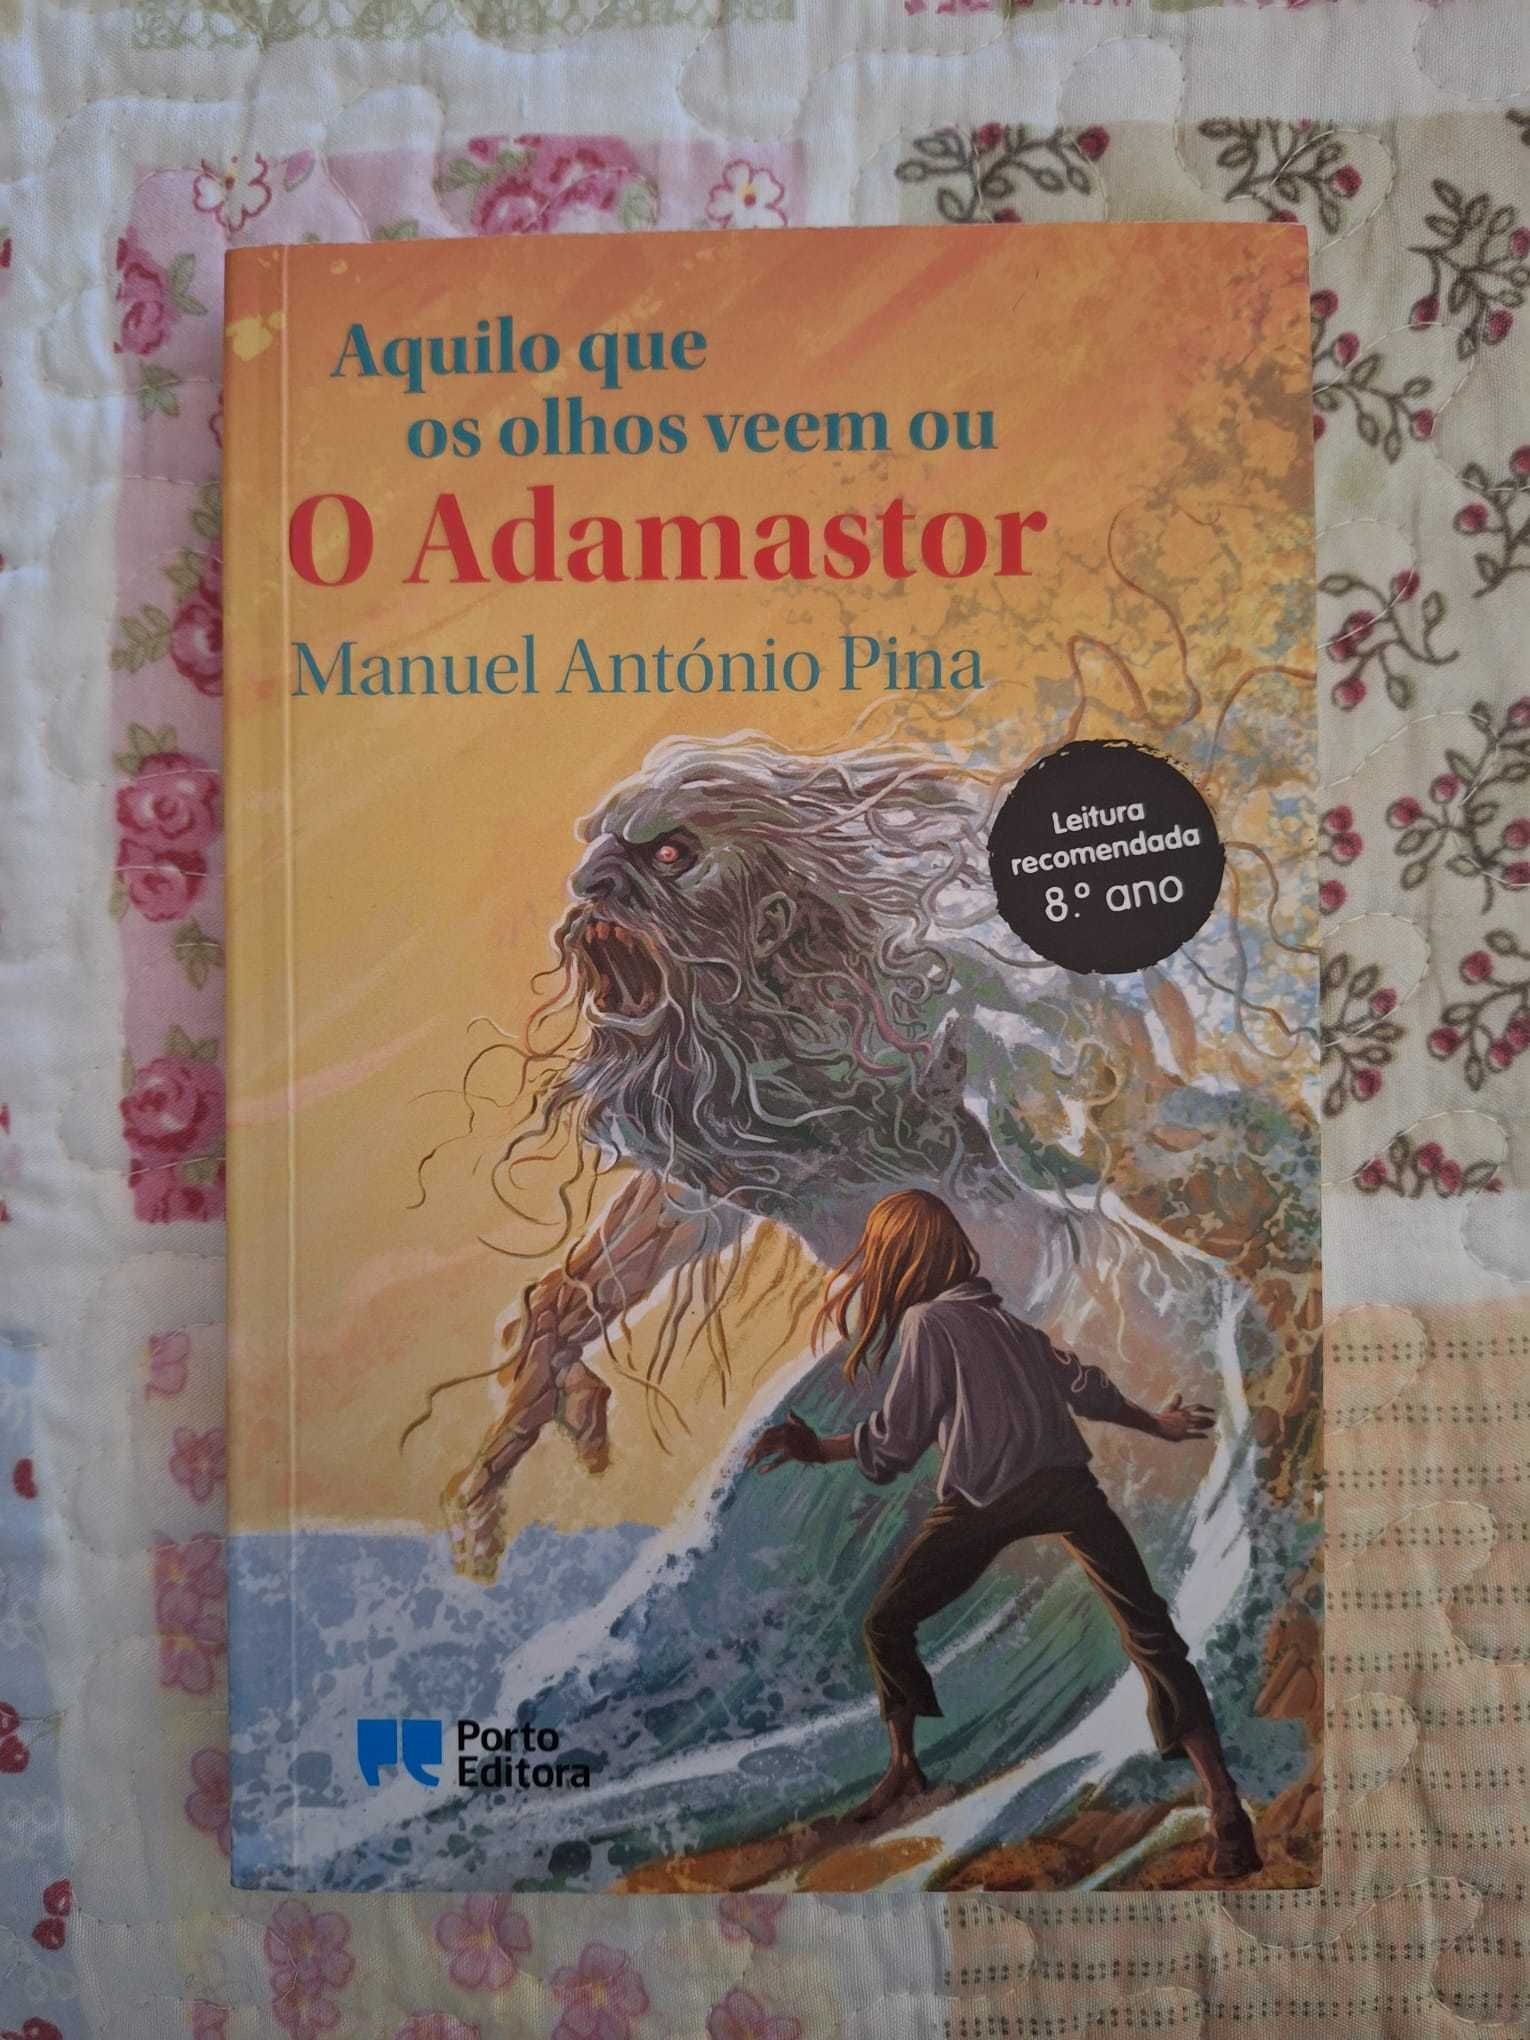 Livro "O Adamastor"